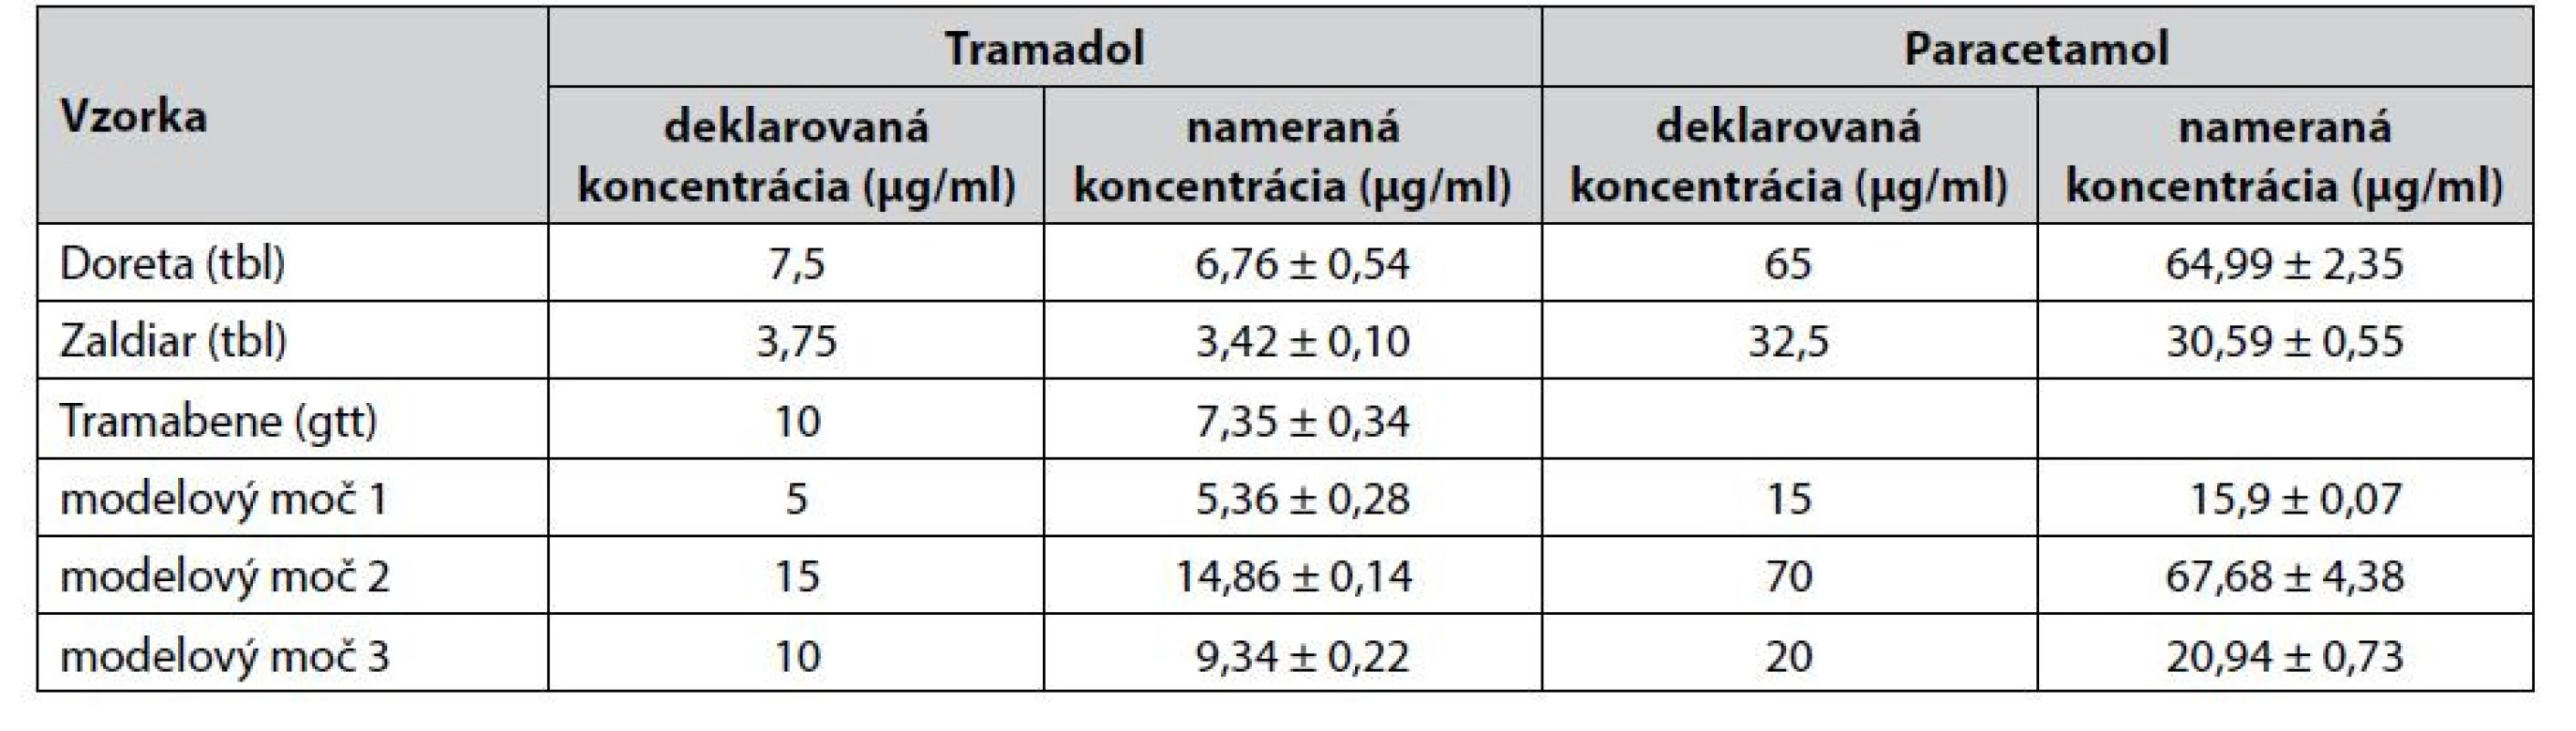 Analýza tramadolu a paracetamolu v rozličných liekových formách a modelových vzorkách 5-krát zriedeného moču